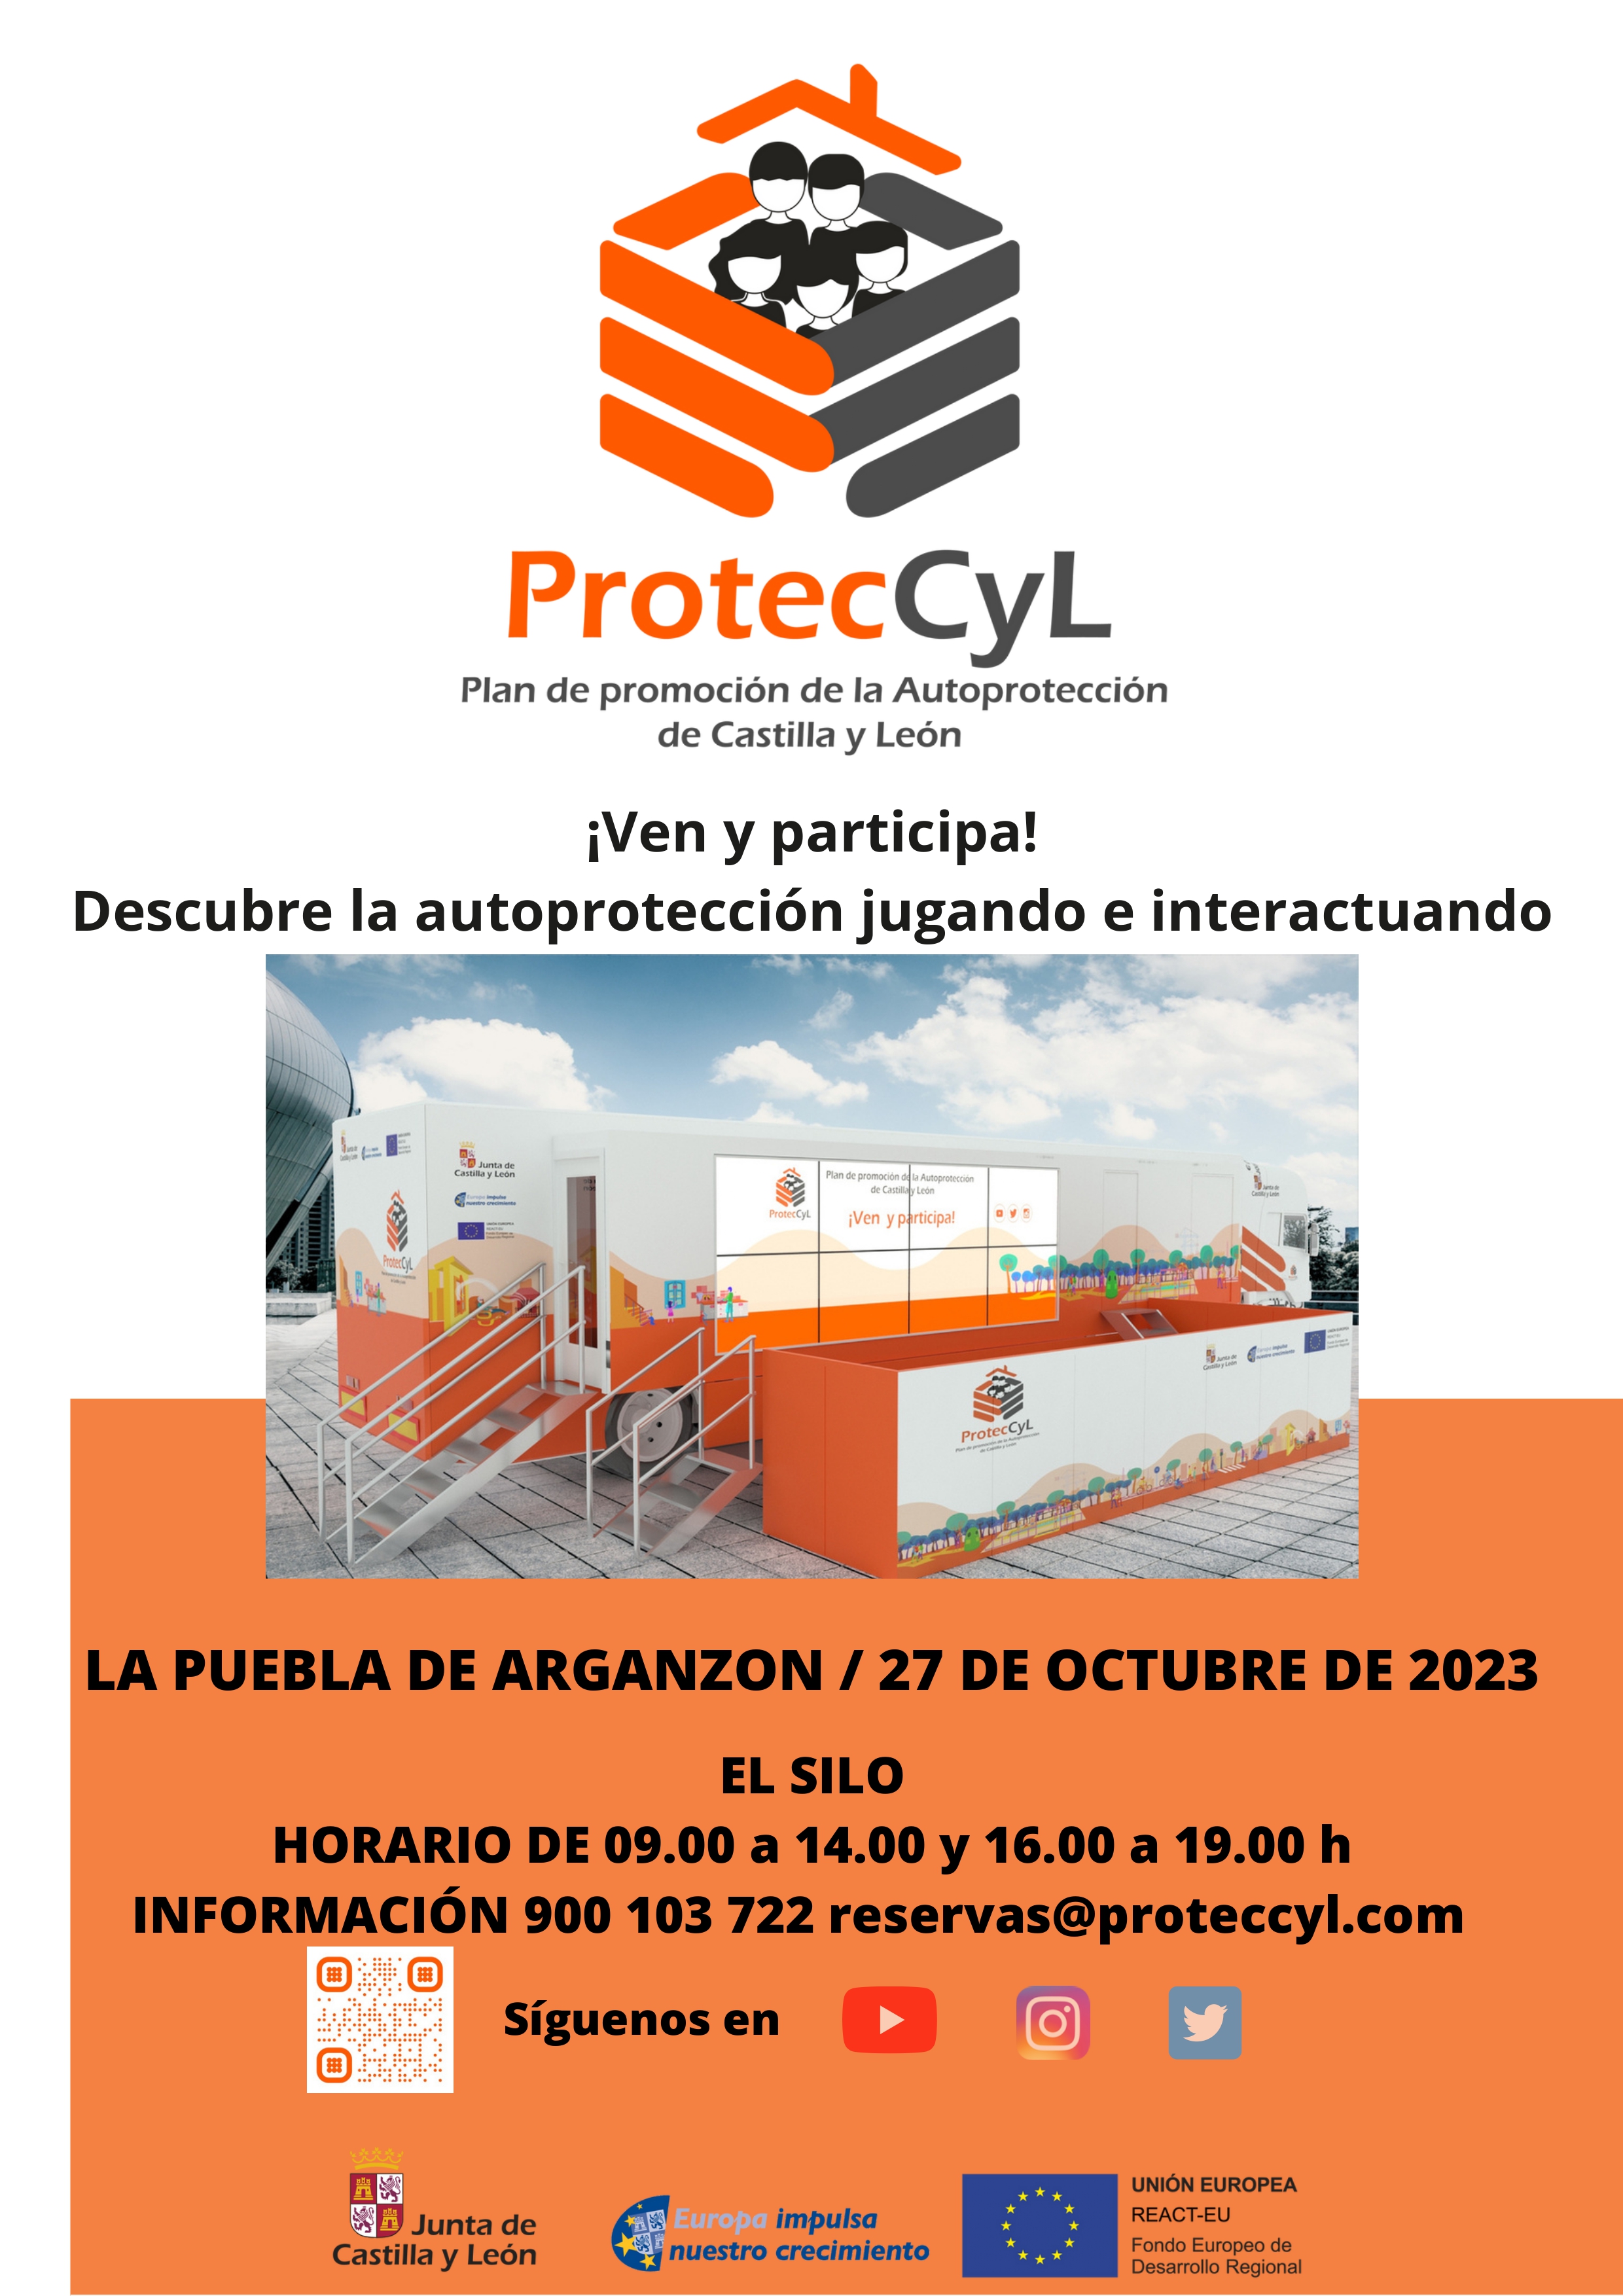 ProtecCyL. Ven y participa